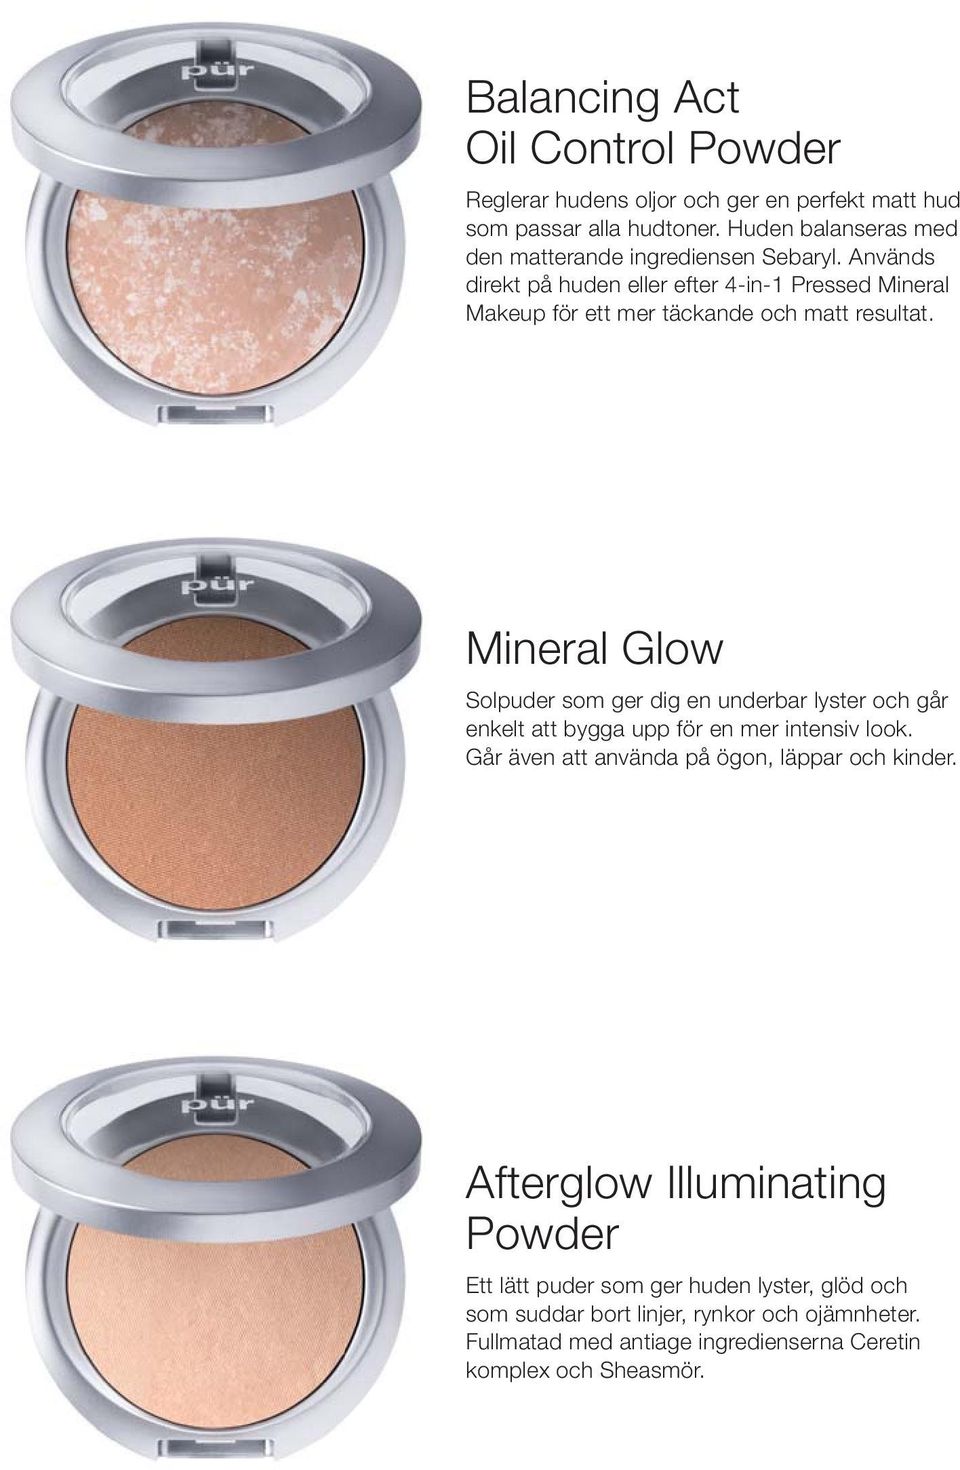 Används direkt på huden eller efter 4-in-1 Pressed Mineral Makeup för ett mer täckande och matt resultat.